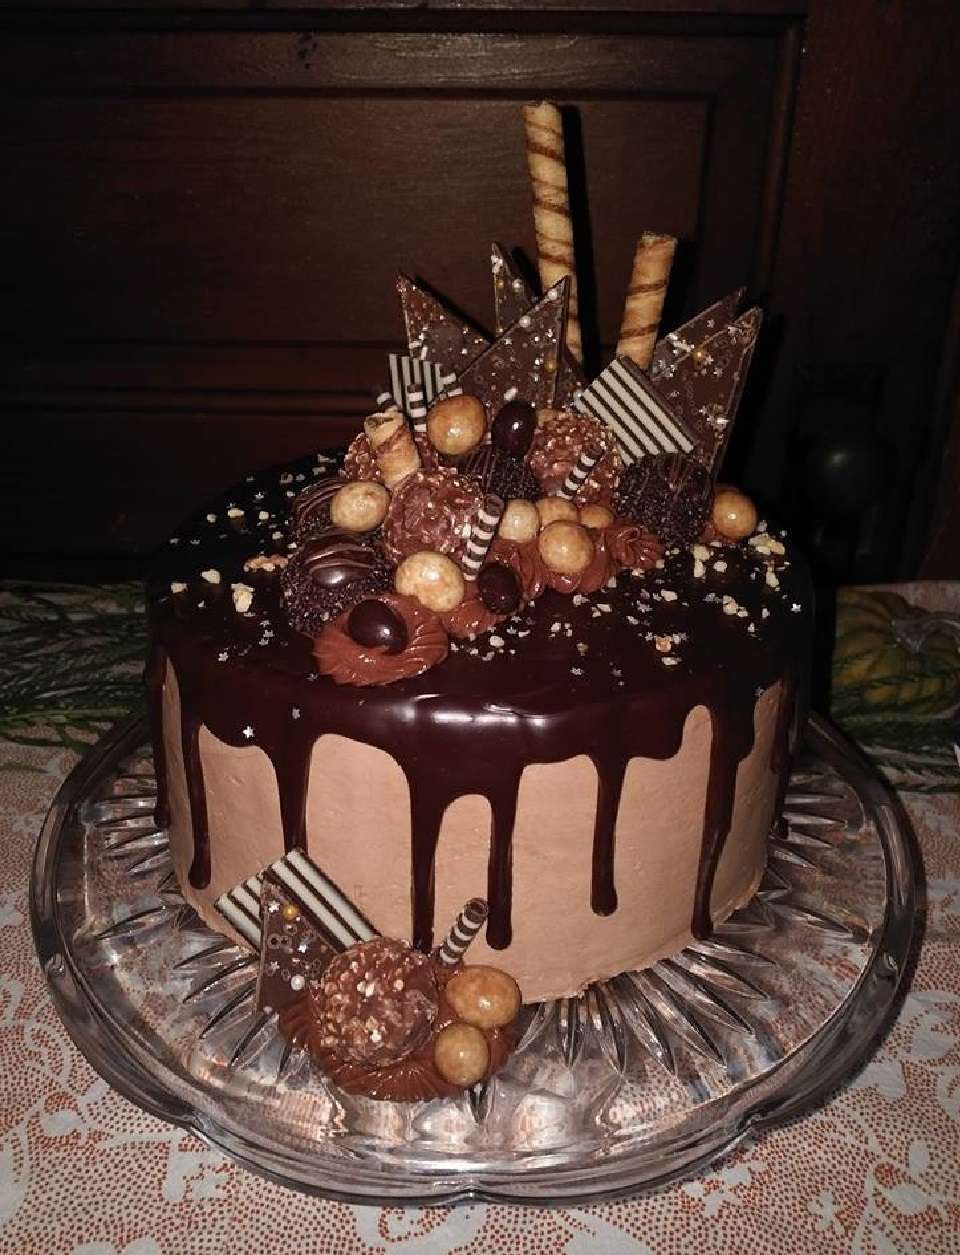 Nutella шоколадный торт